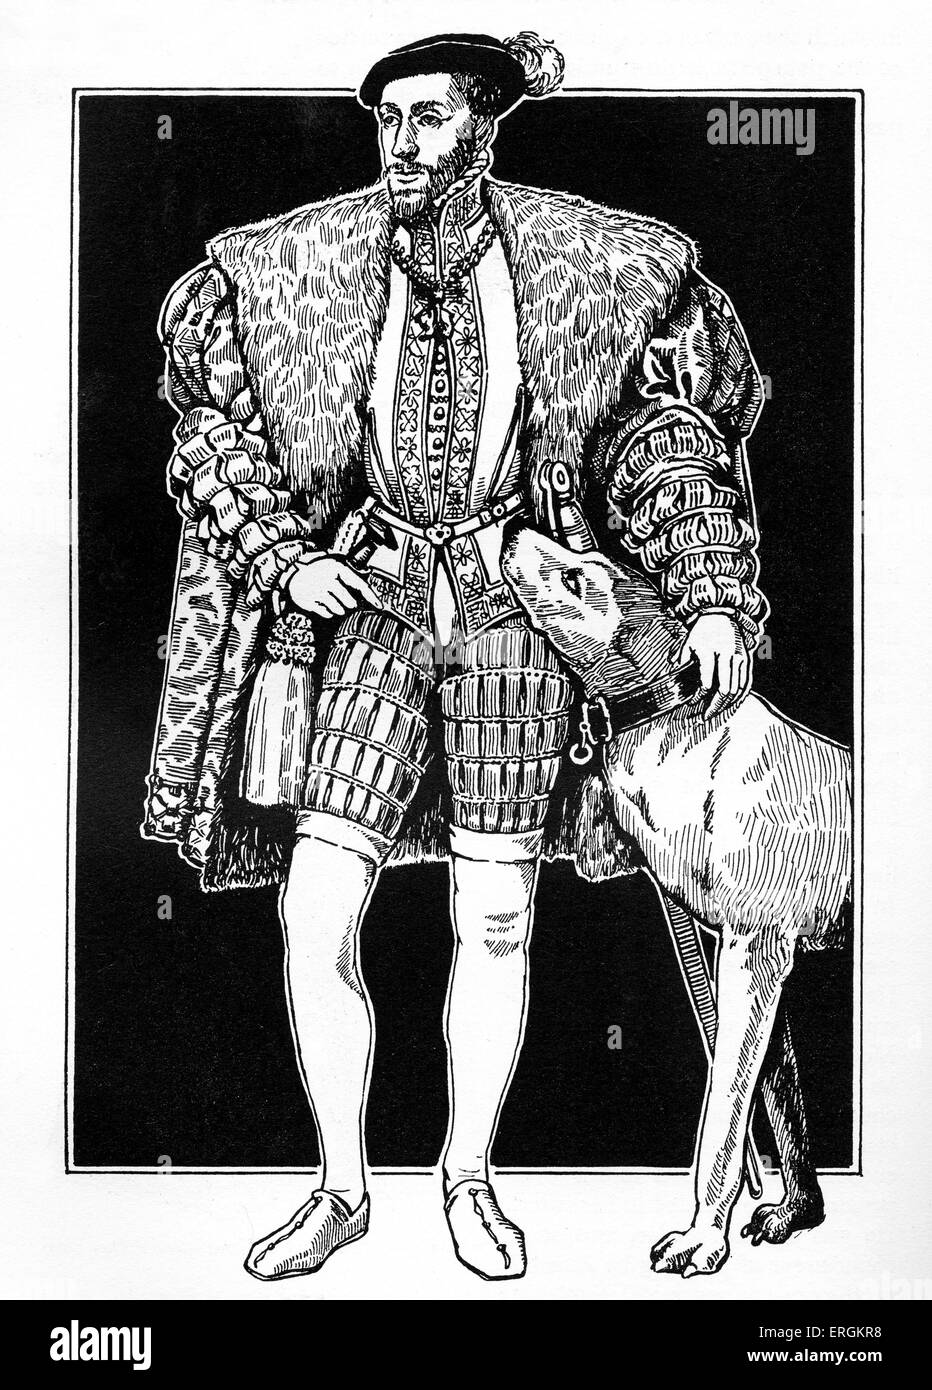 Kaiser Charles V (1500-1558) mit Jagdhund. Herrscher des Heiligen Römischen Reiches von 1519 und des spanischen Reiches aus dem Jahre 1516 (als Charles ich). Nach dem Porträt von Tizian, Tiziano Vecelli oder Tiziano Vecellio (c.1488 - 1576) aus 1533.After original Künstlers Herbert Norris starb 1950 - erfordern copyright clearance Stockfoto